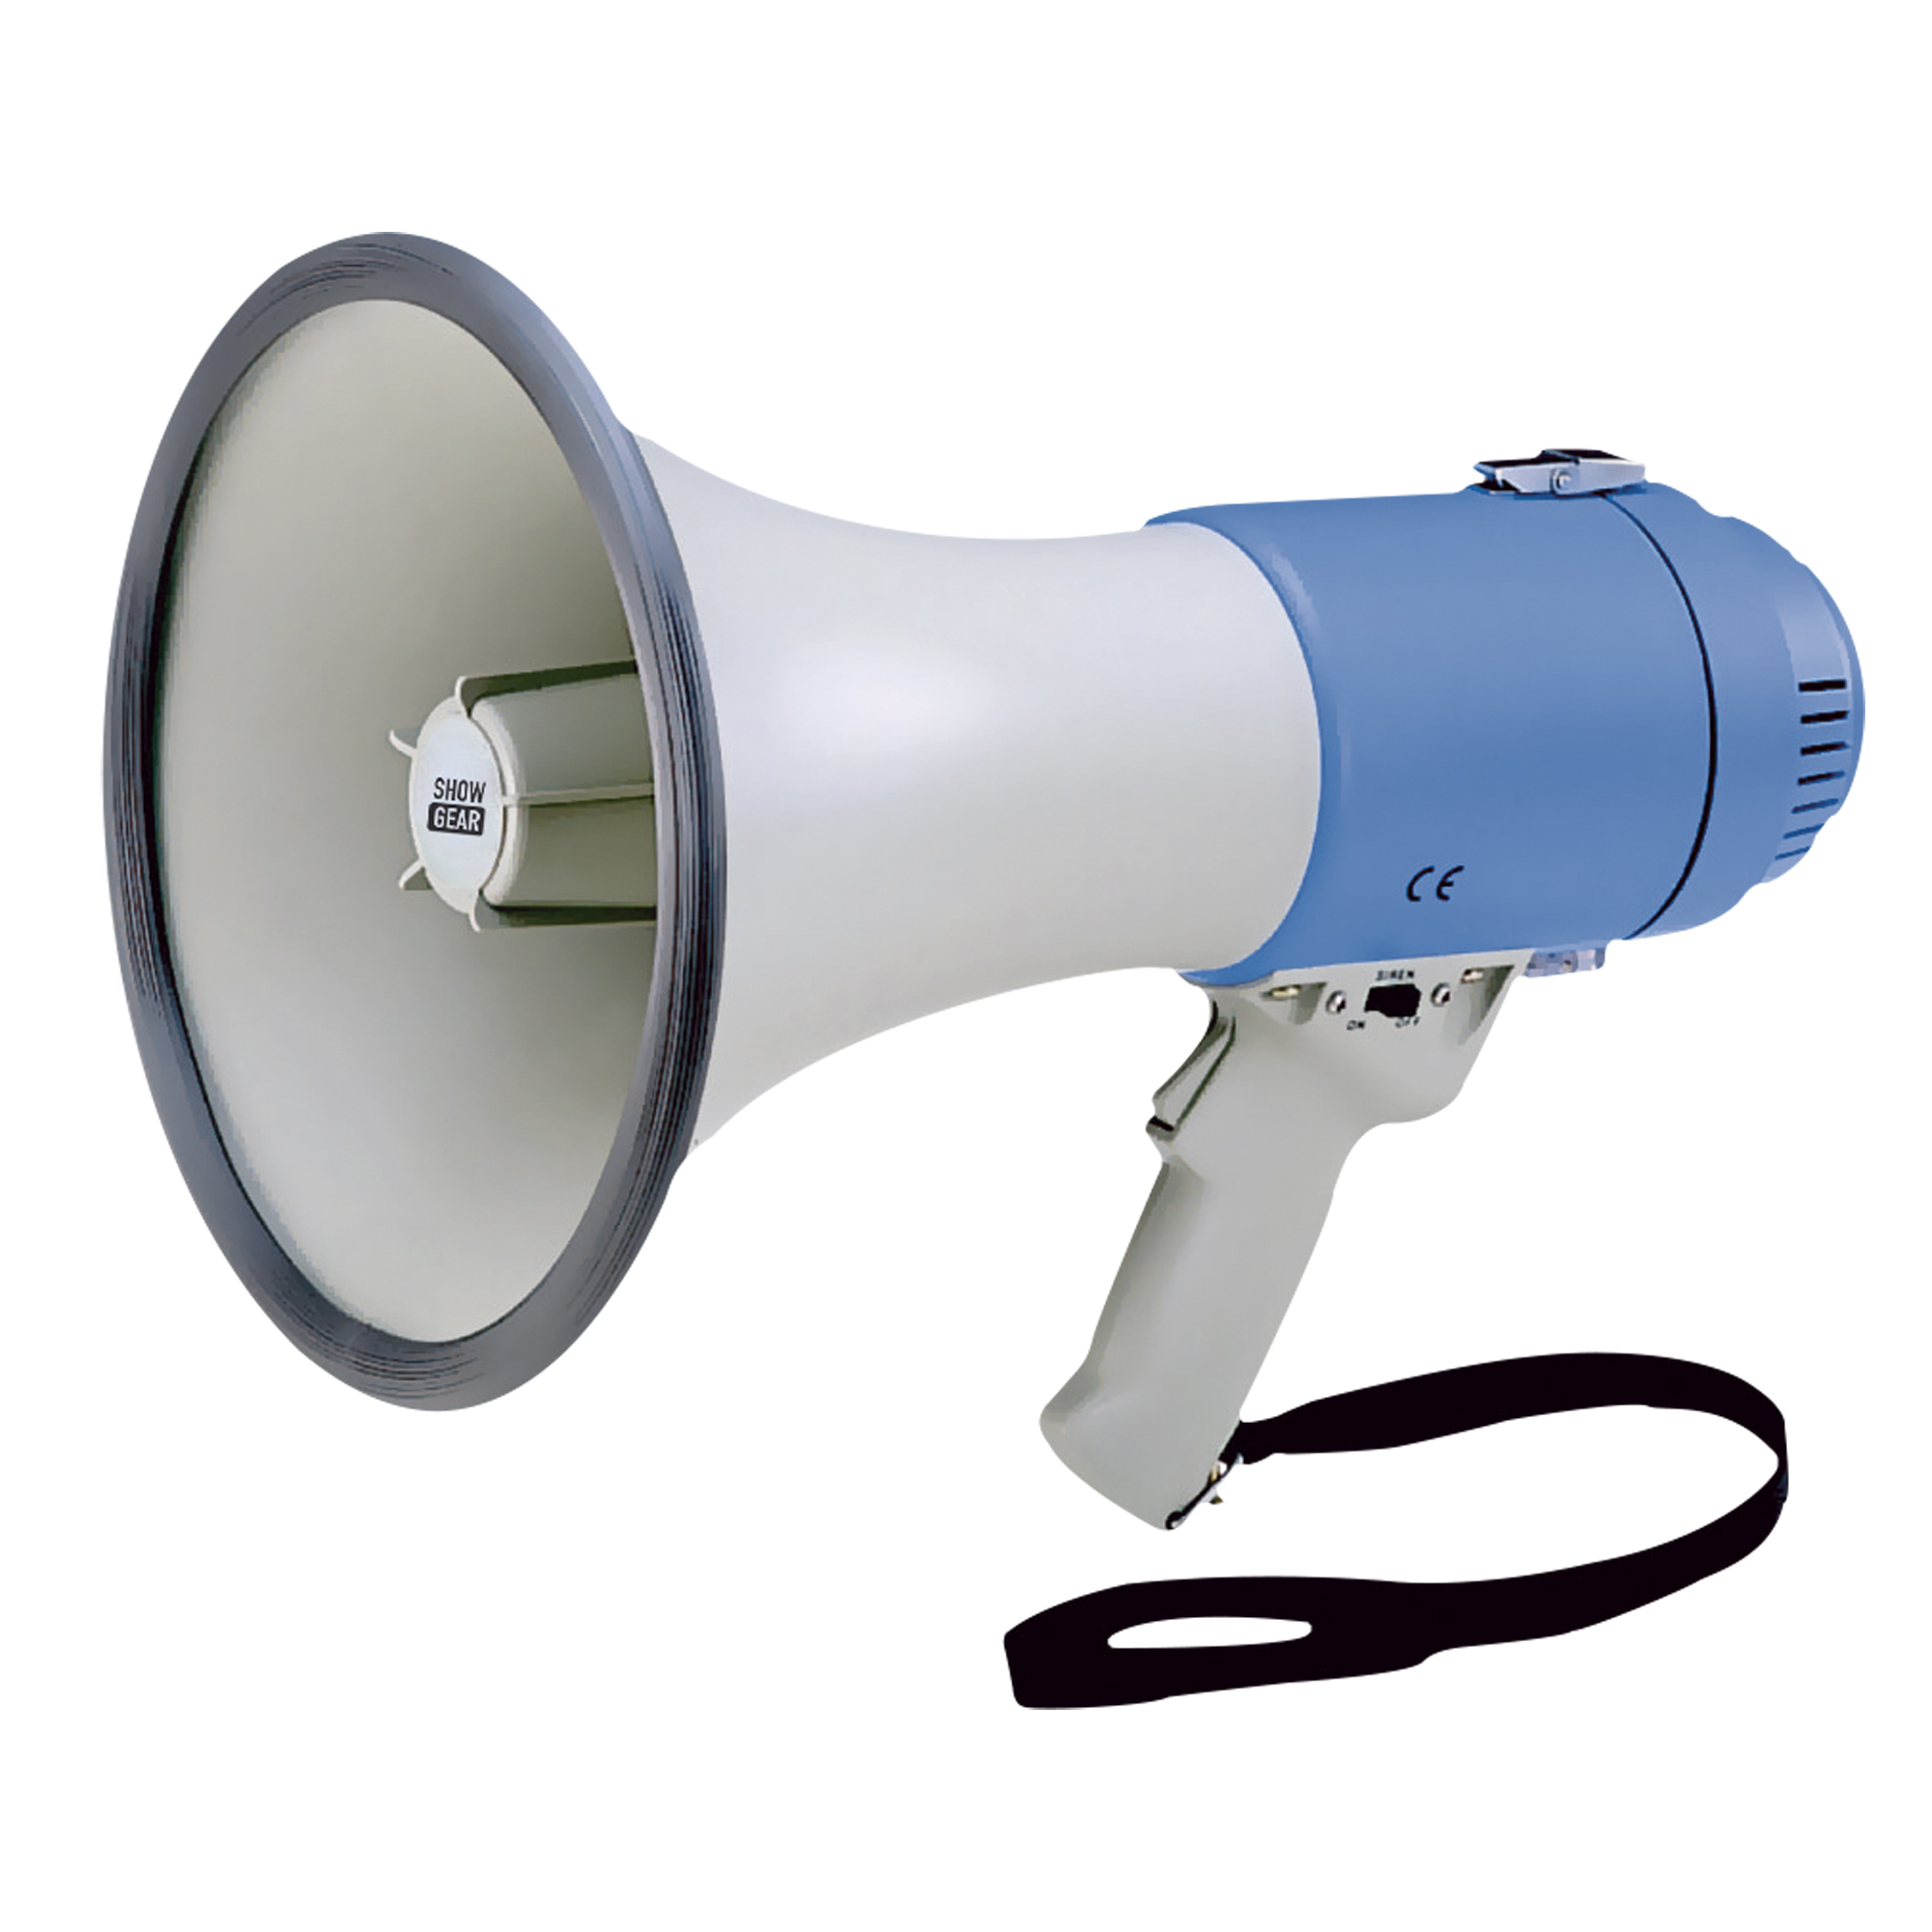 Showgear MF25F Handmegaphon mit 25 Watt - blau/weiß